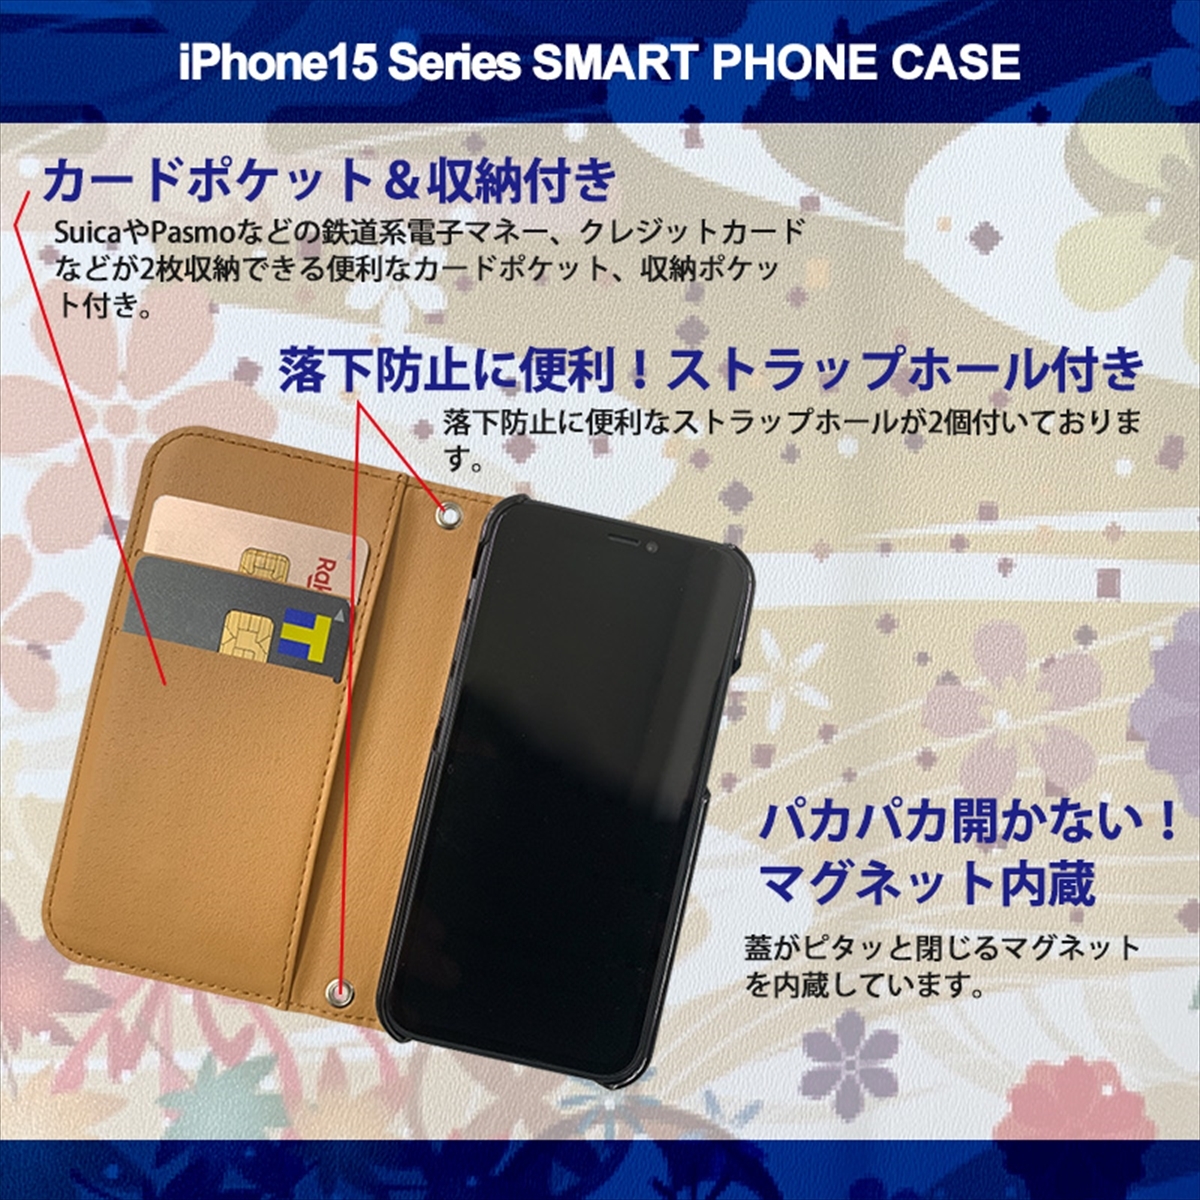 1】 iPhone15 Pro 手帳型 アイフォン ケース スマホカバー PVC レザー 和柄 桜 紫